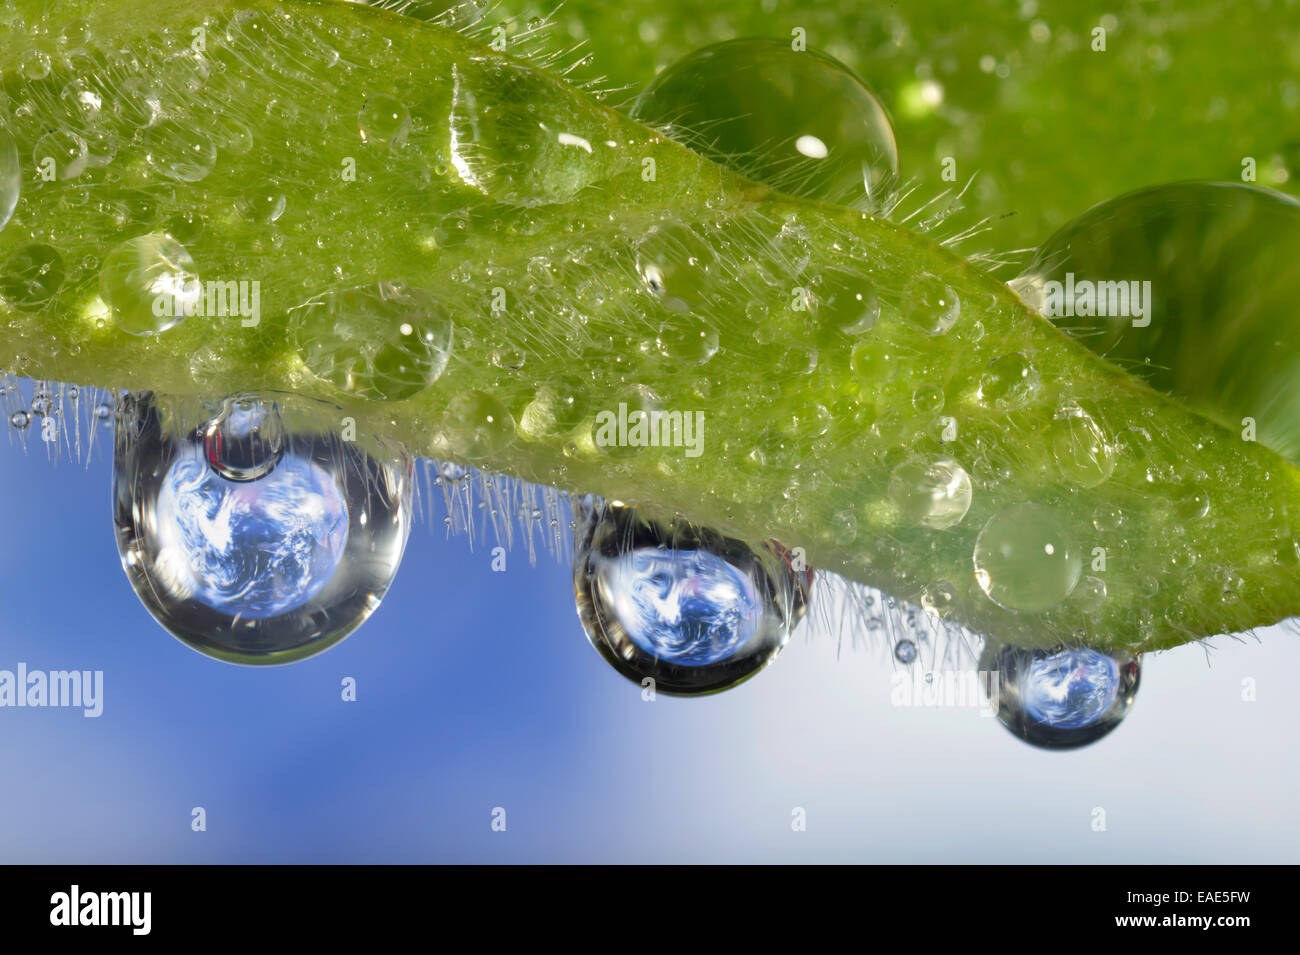 Planeta Tierra reflejada en dewdrops, imagen simbólica del agua como un elixir de la vida, Alemania Foto de stock